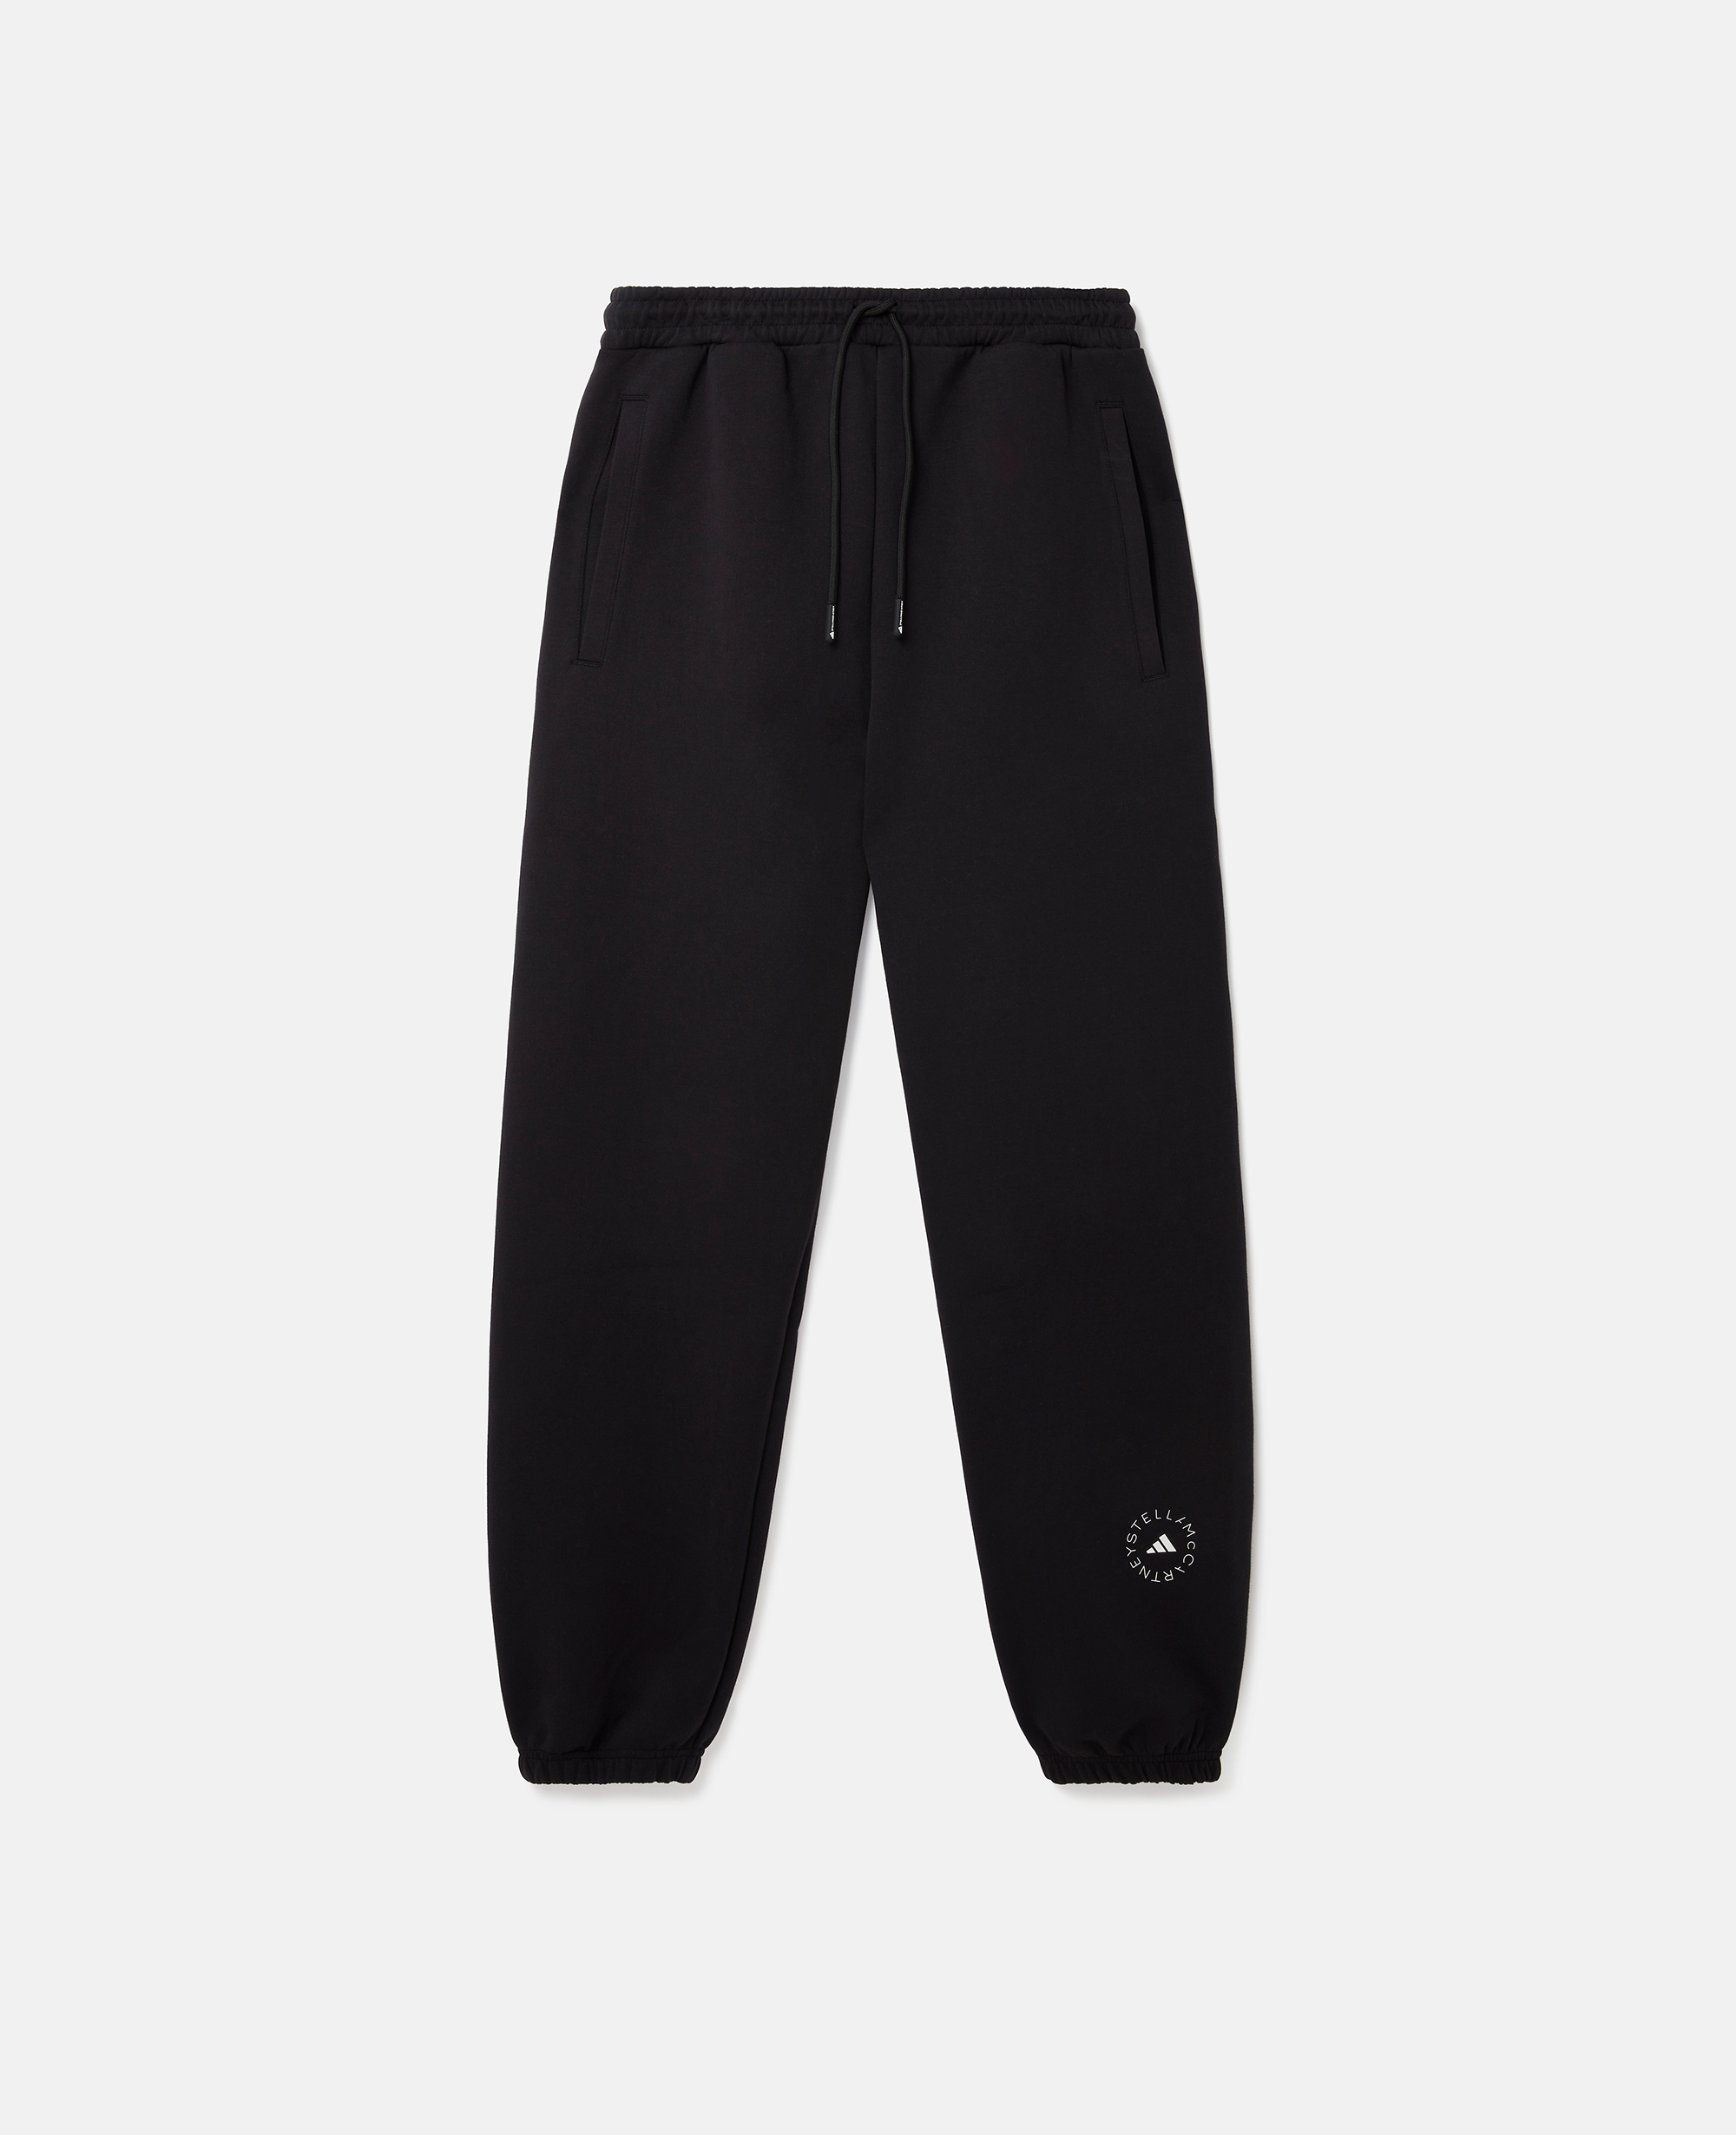 stella mccartney - logo sweatpants, woman, black/white, size: s